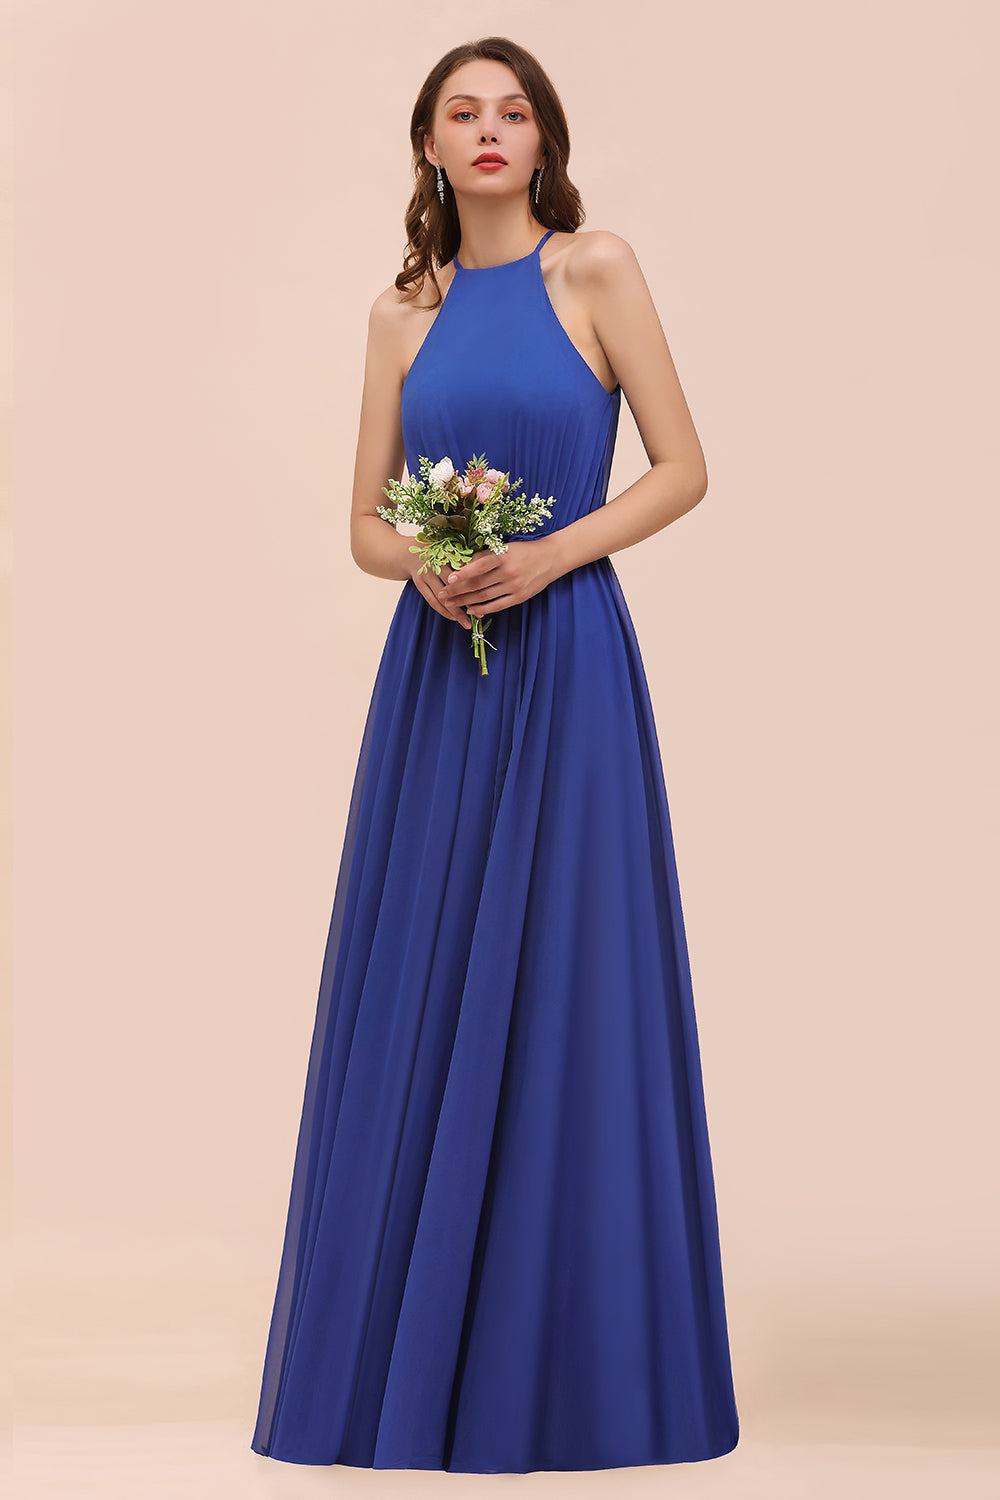 Royal Blue A-Line Chiffon Halter Bridesmaid Dress Long Wedding Guest Dress-BIZTUNNEL